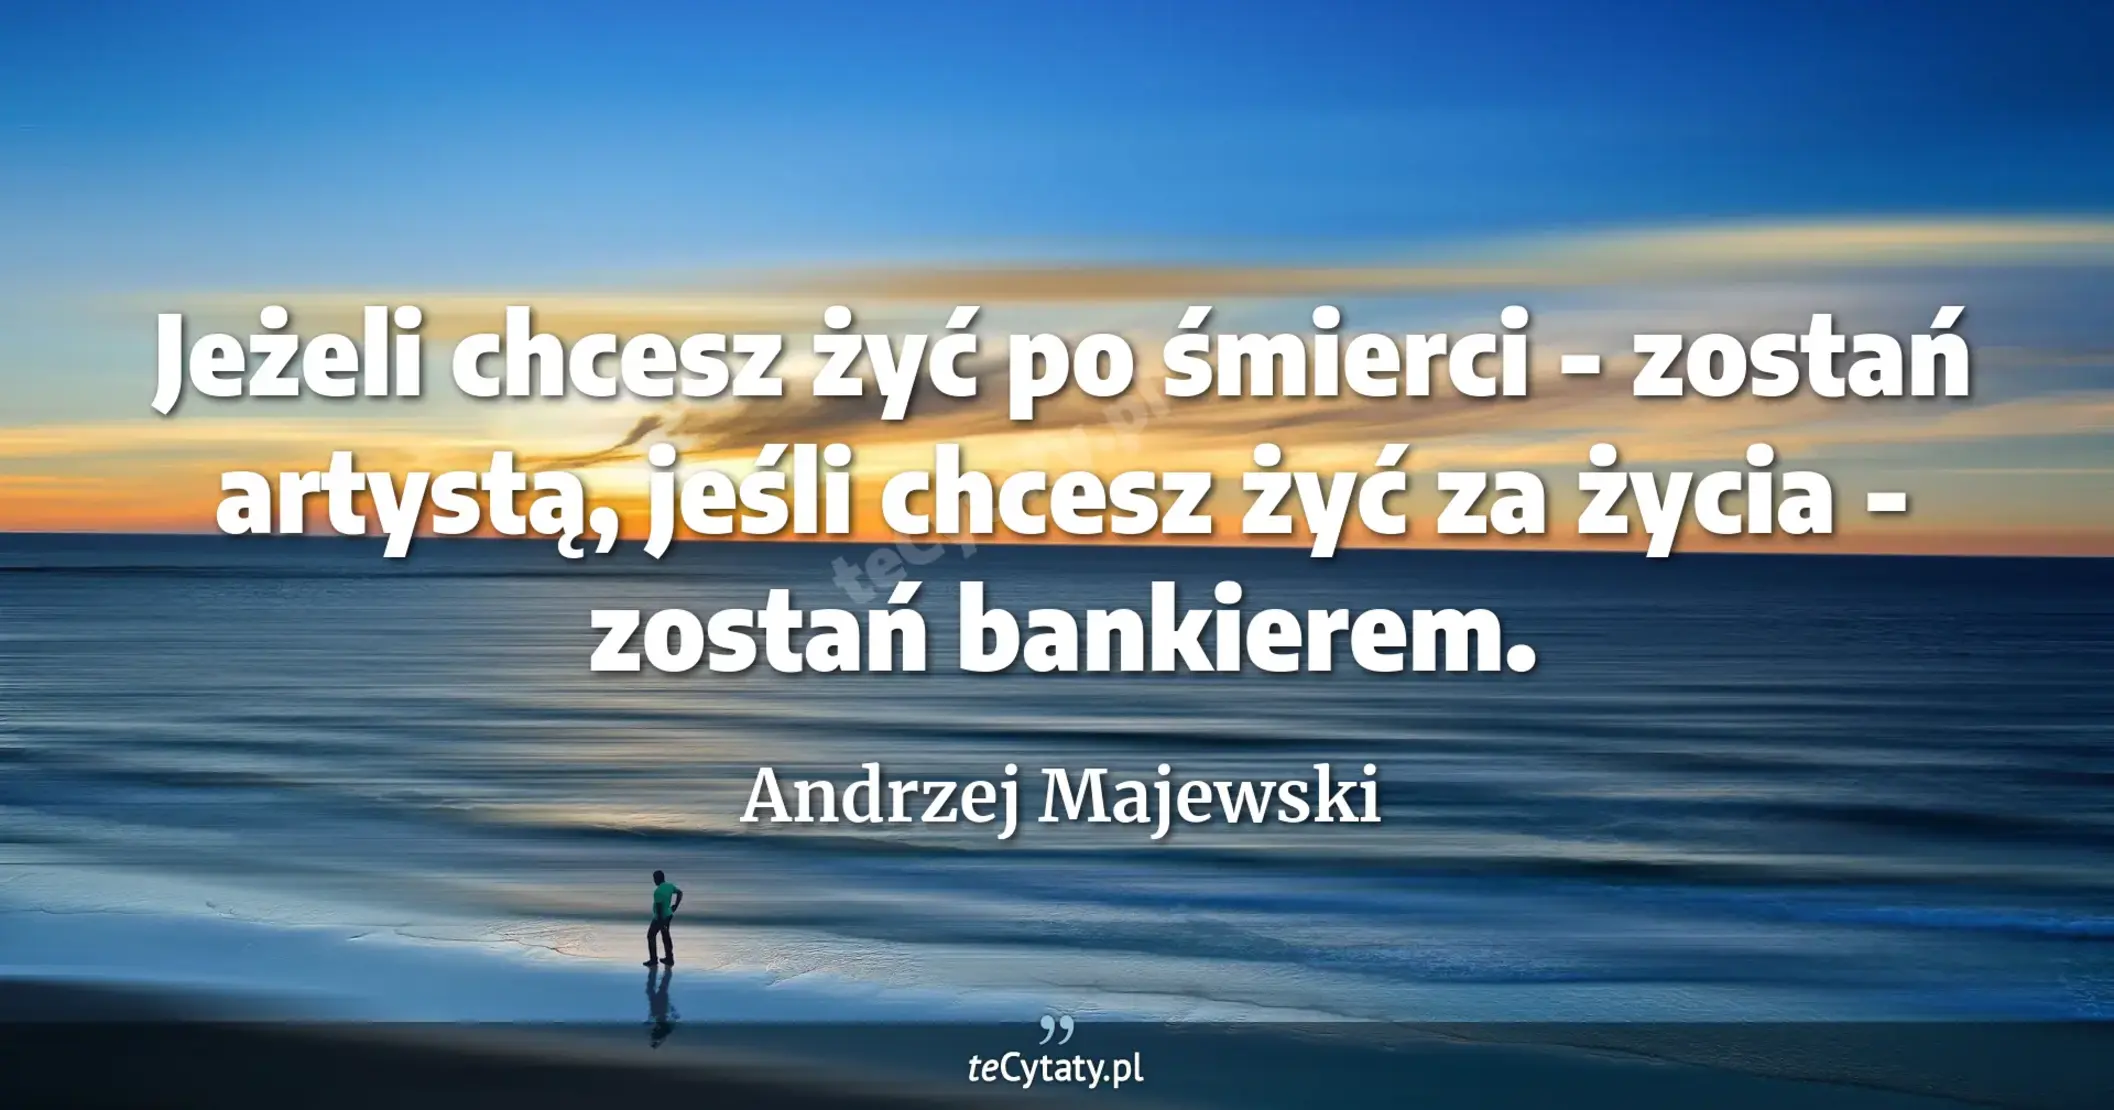 Jeżeli chcesz żyć po śmierci - zostań artystą, jeśli chcesz żyć za życia - zostań bankierem. - Andrzej Majewski